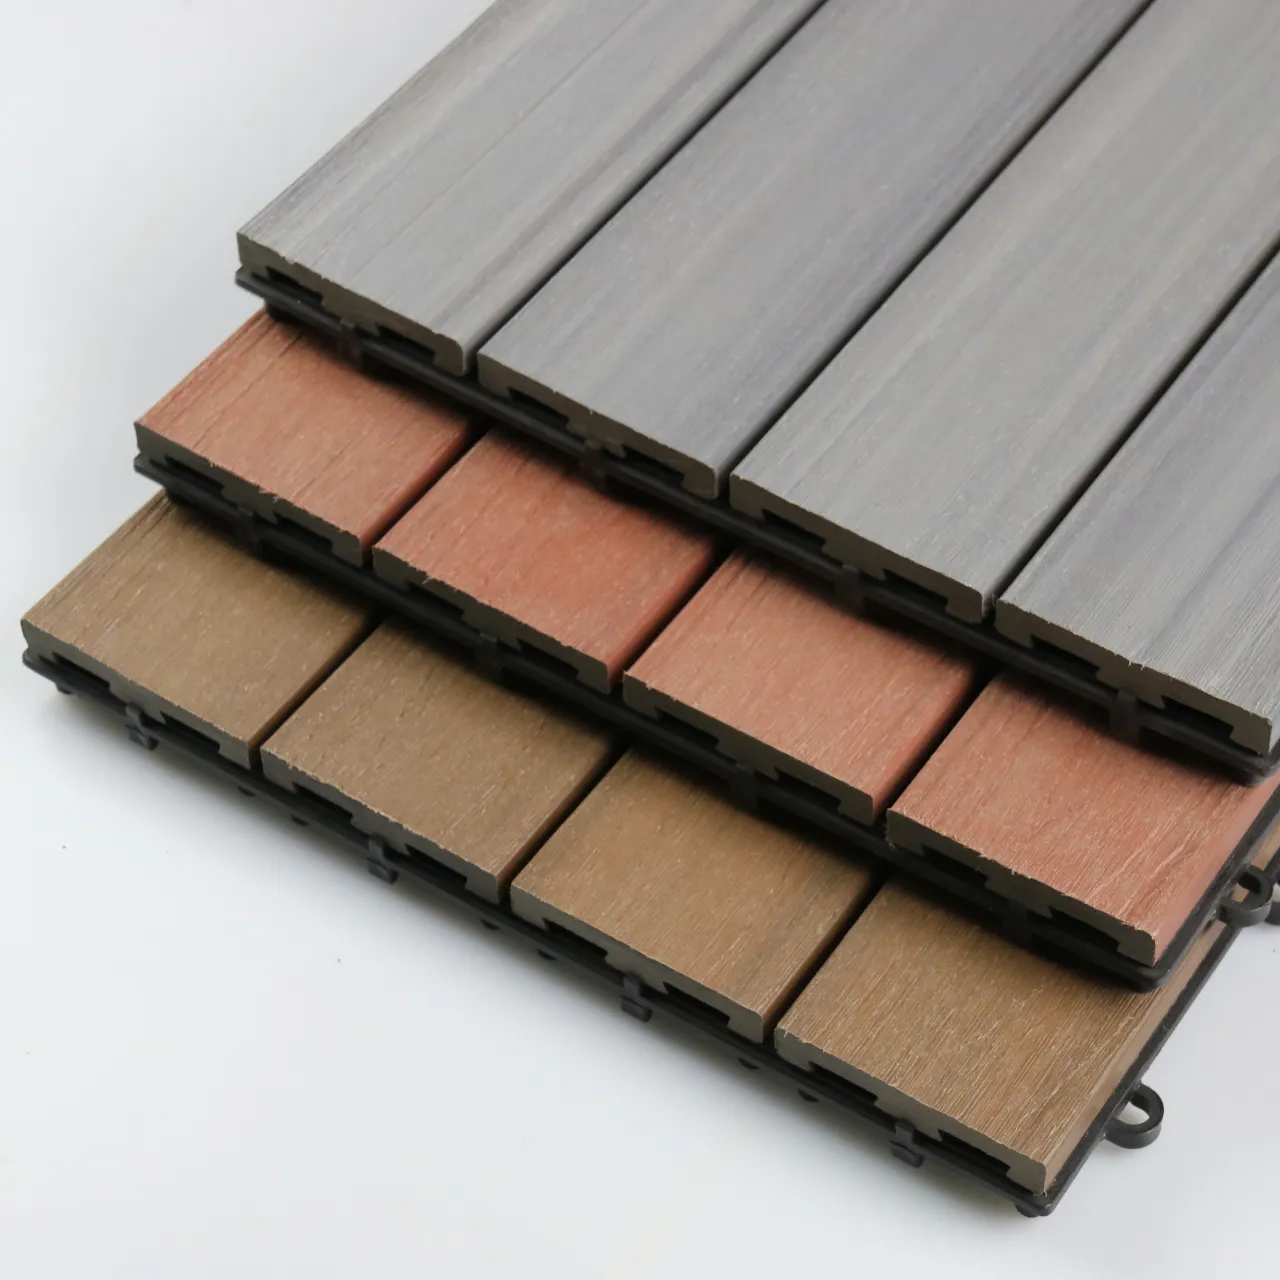 Wpc Tiles 300x300mm Wood Flooring Wood Plastic Composite Wood 3D Grain Deck Outdoor Garden Flooring Embossed